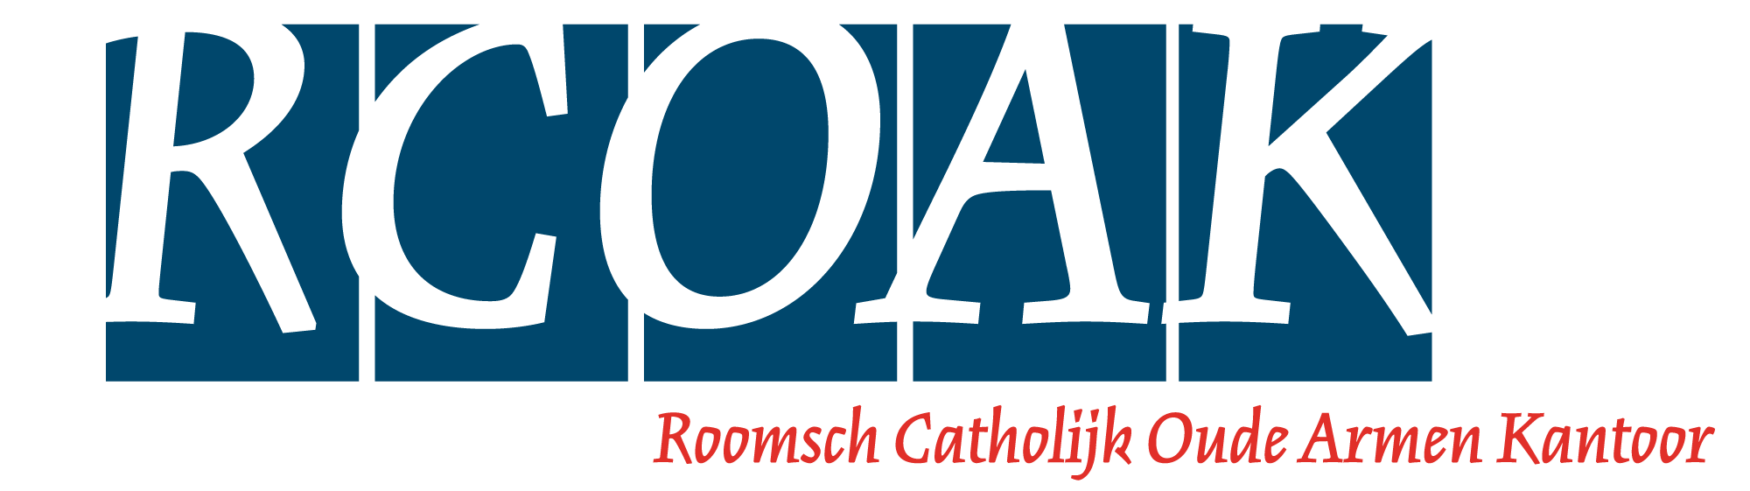 Logo RCOAK